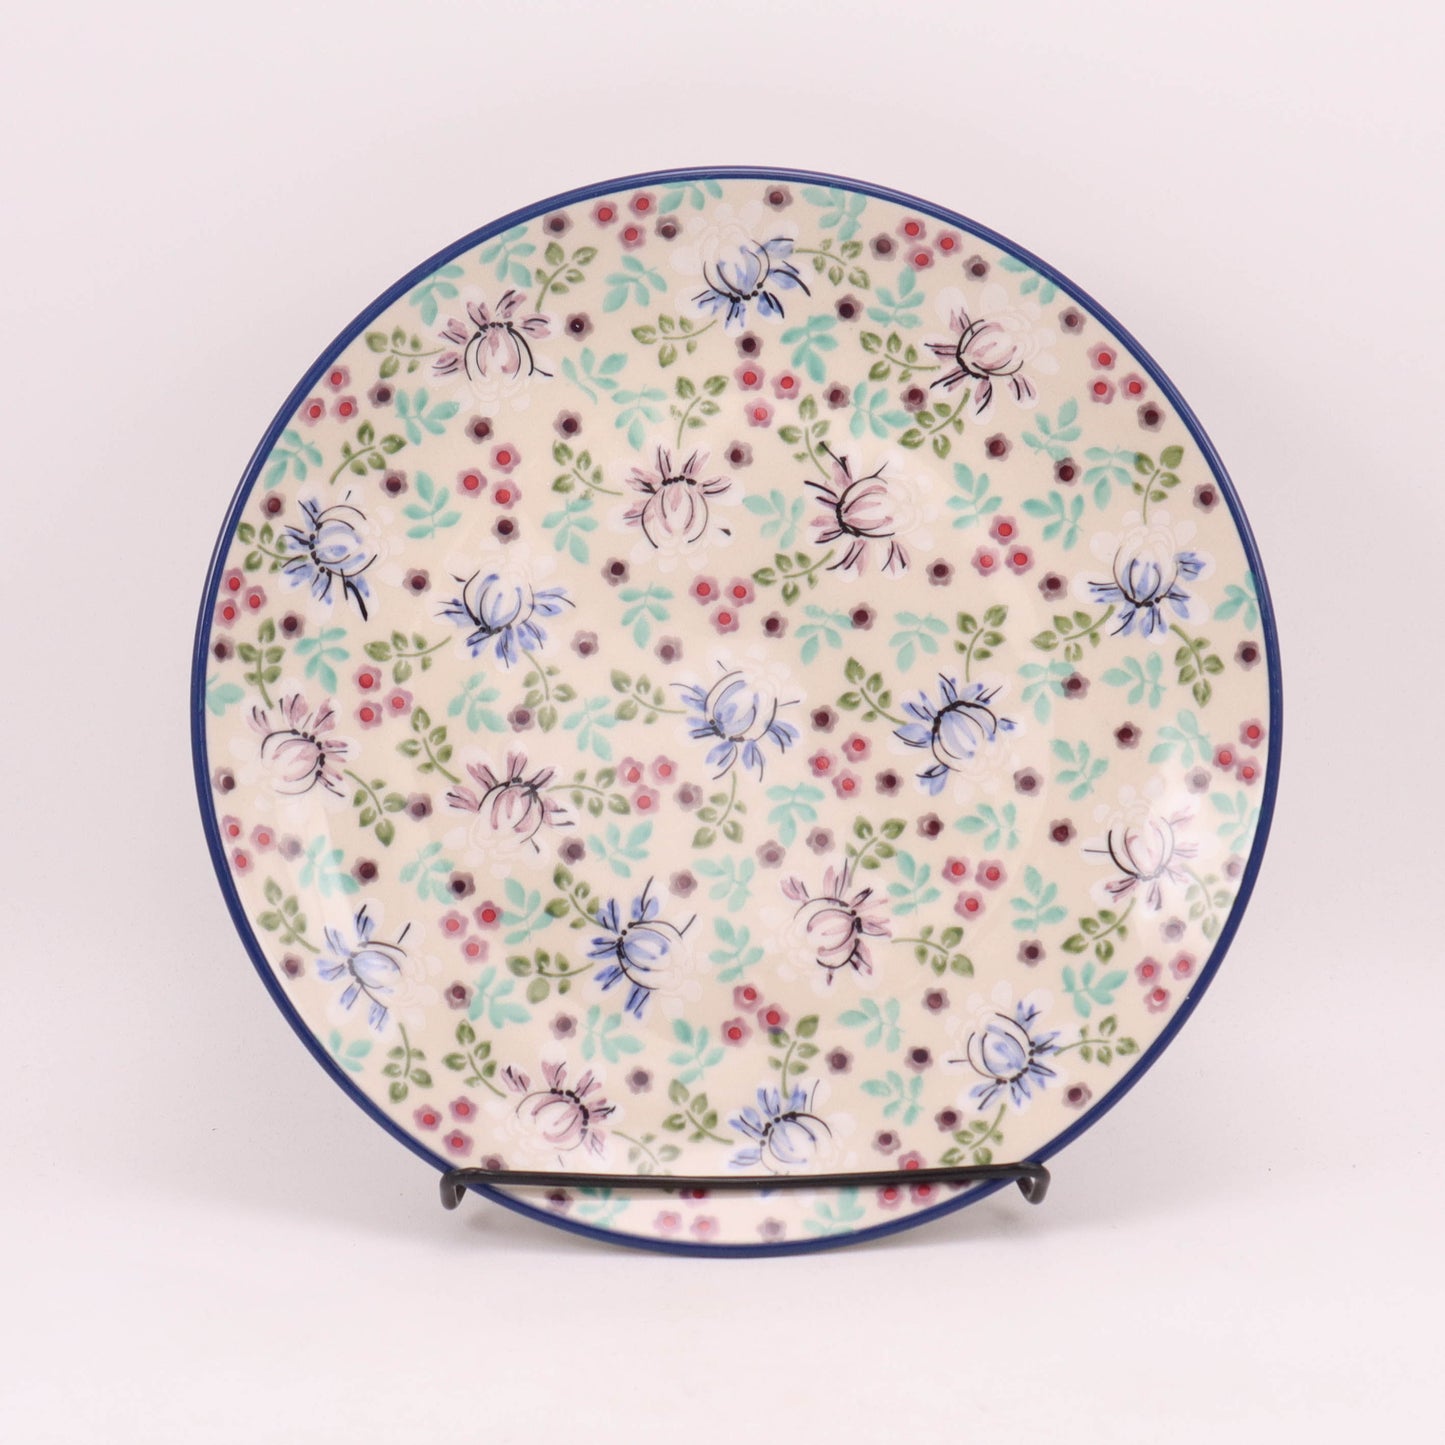 10" Dinner Plate. Pattern: Vintage Floral